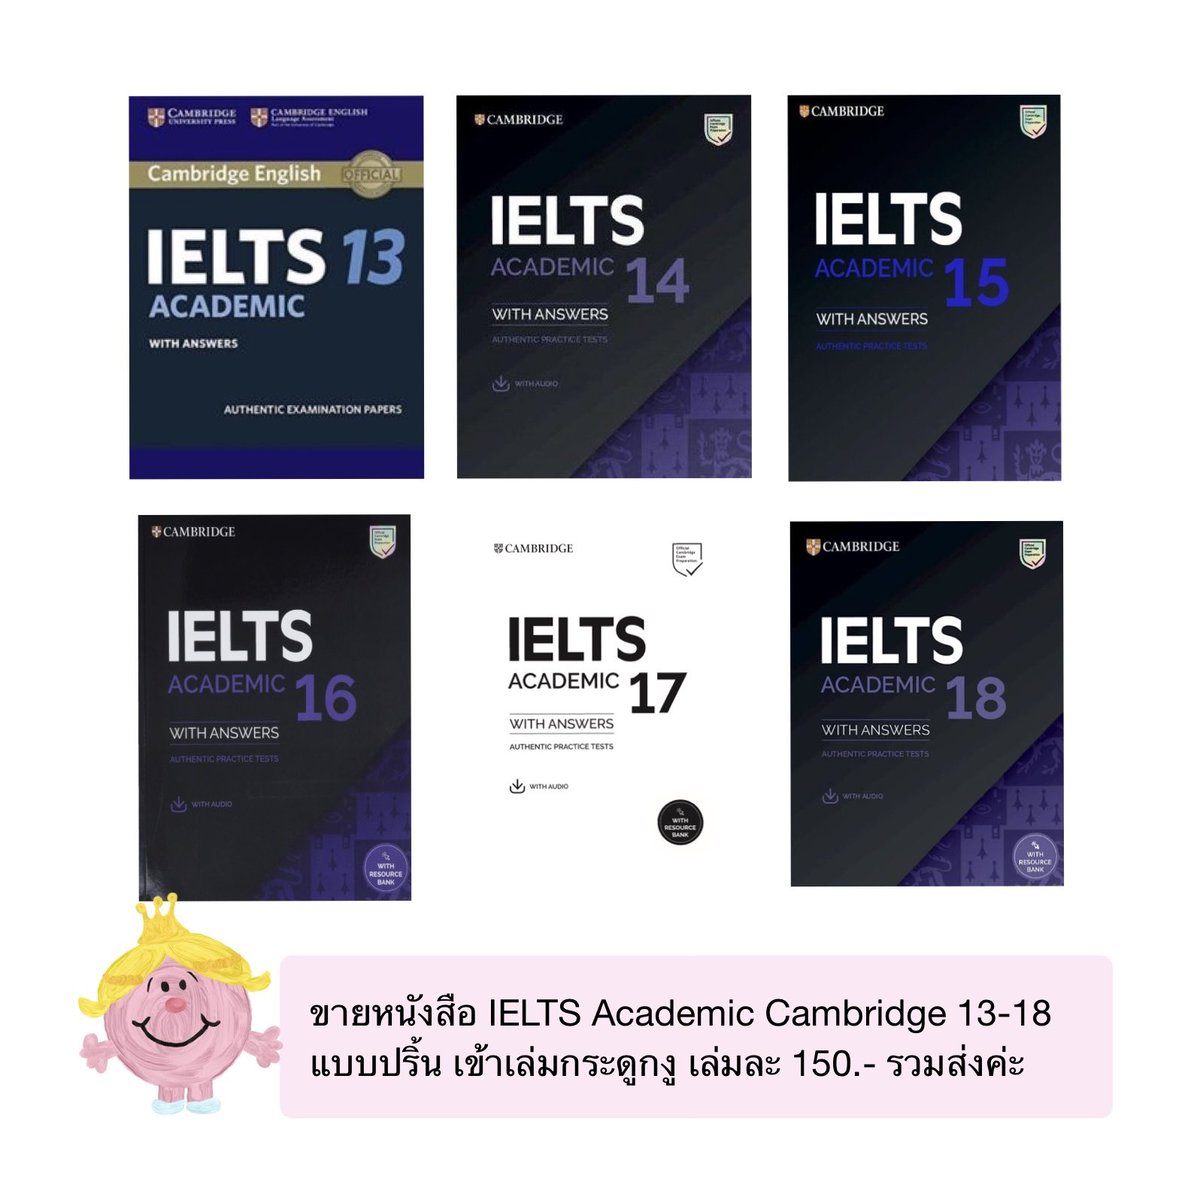 ขายหนังสือ IELTS Academic Cambridge 13-18 📚💗
แบบปริ้น เข้าเล่มกระดูกงู เล่มละ 150.- รวมส่งค่ะ
#ขายไฟล์ #ไฟล์หนังสือ #ไฟล์ielts #ไฟล์หนังสือสอบielts #ไฟล์หนังสือielts #tgat #ส่งต่อหนังสือ #ส่งต่อหนังสือมือสอง  #tcas67 #ติวไอเอล #หนังสือไอเอล #สอบไอเอล #เรียนไอเอล #ไฟล์ไอเอล